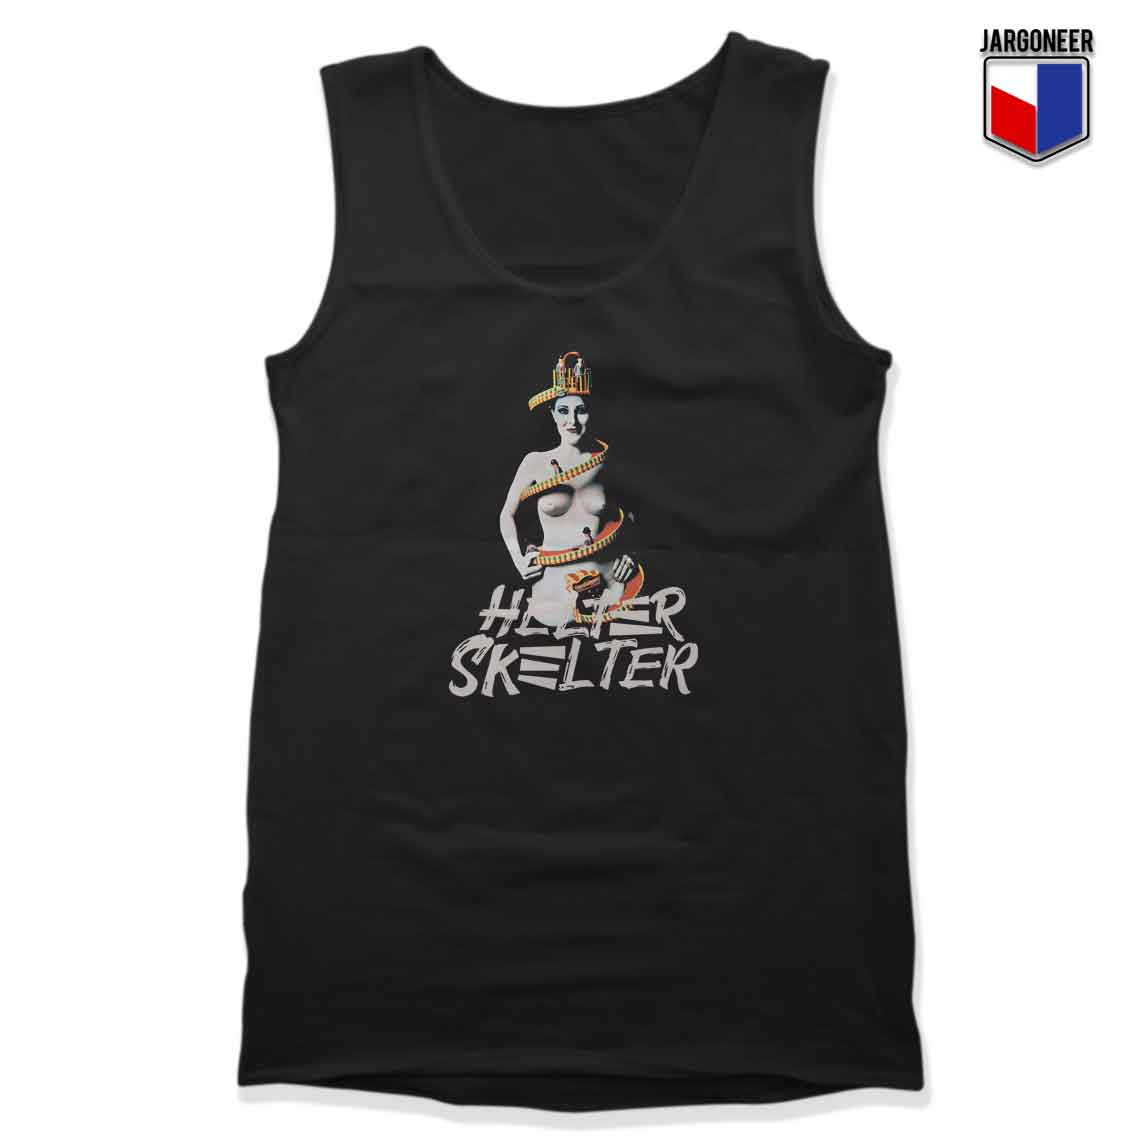 Helter Skelter - Shop Unique Graphic Cool Shirt Designs